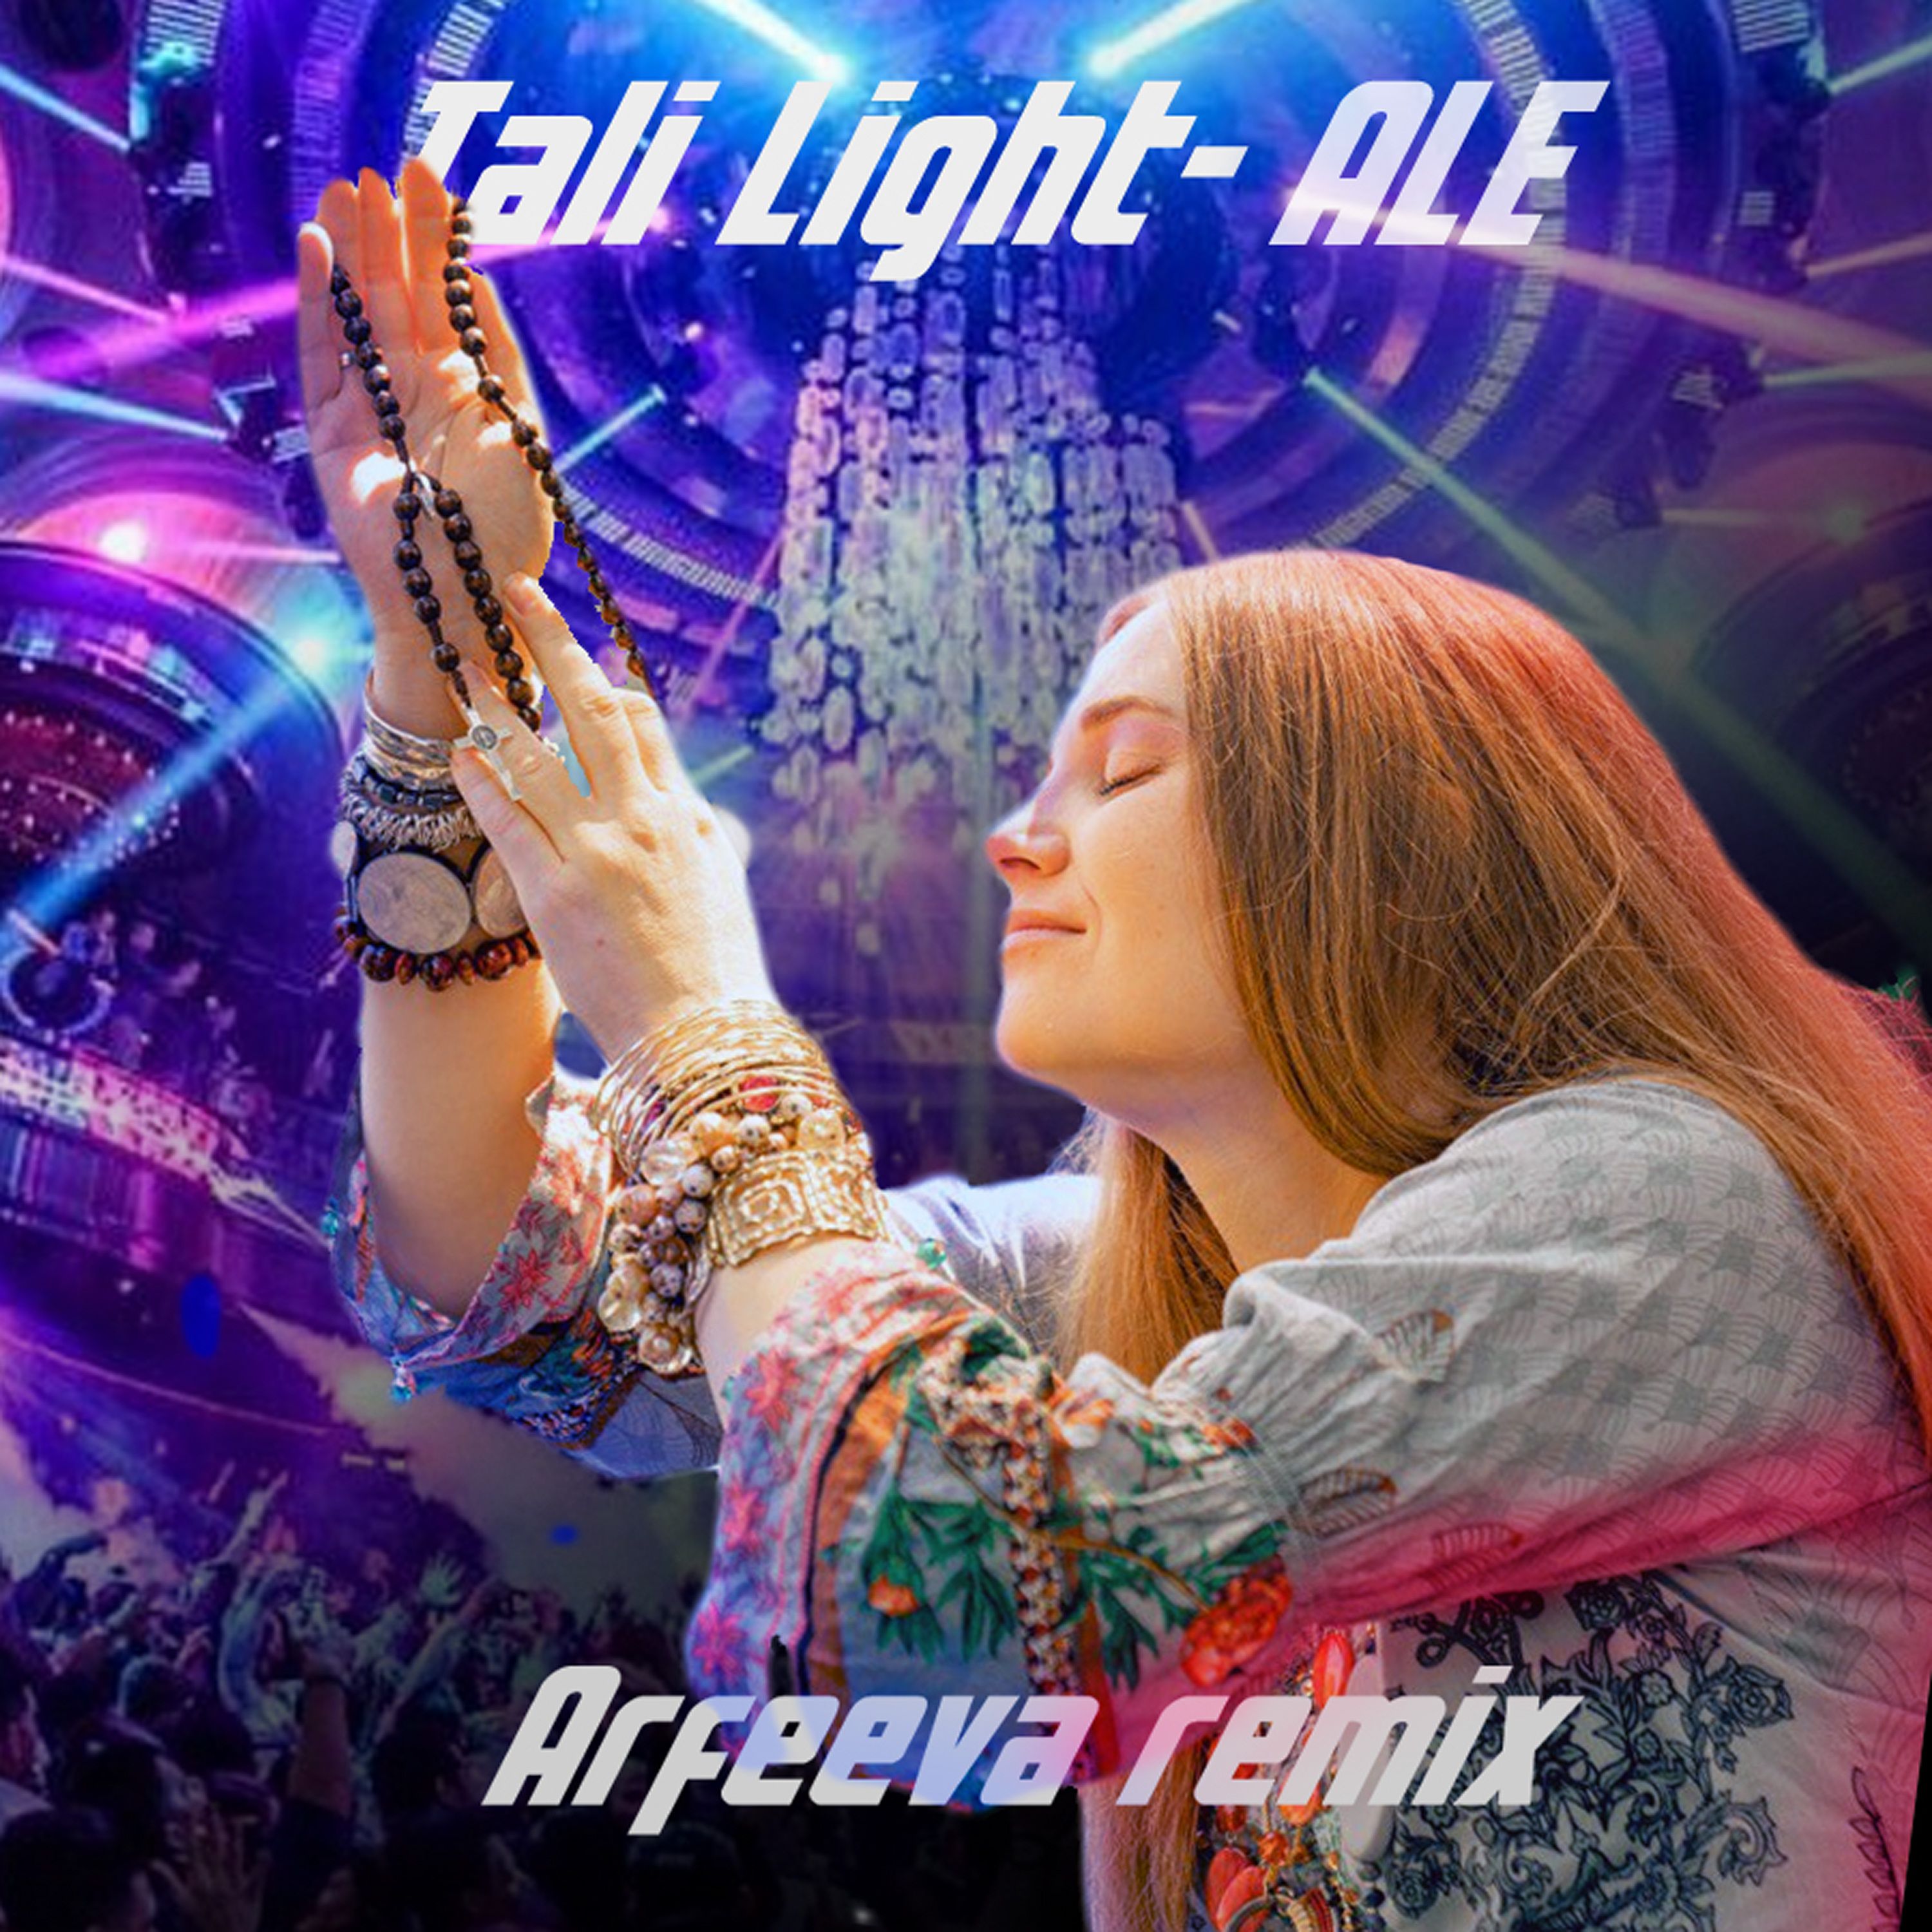 Preuzimanje datoteka Tali Light - Але (Arfeeva Remix)